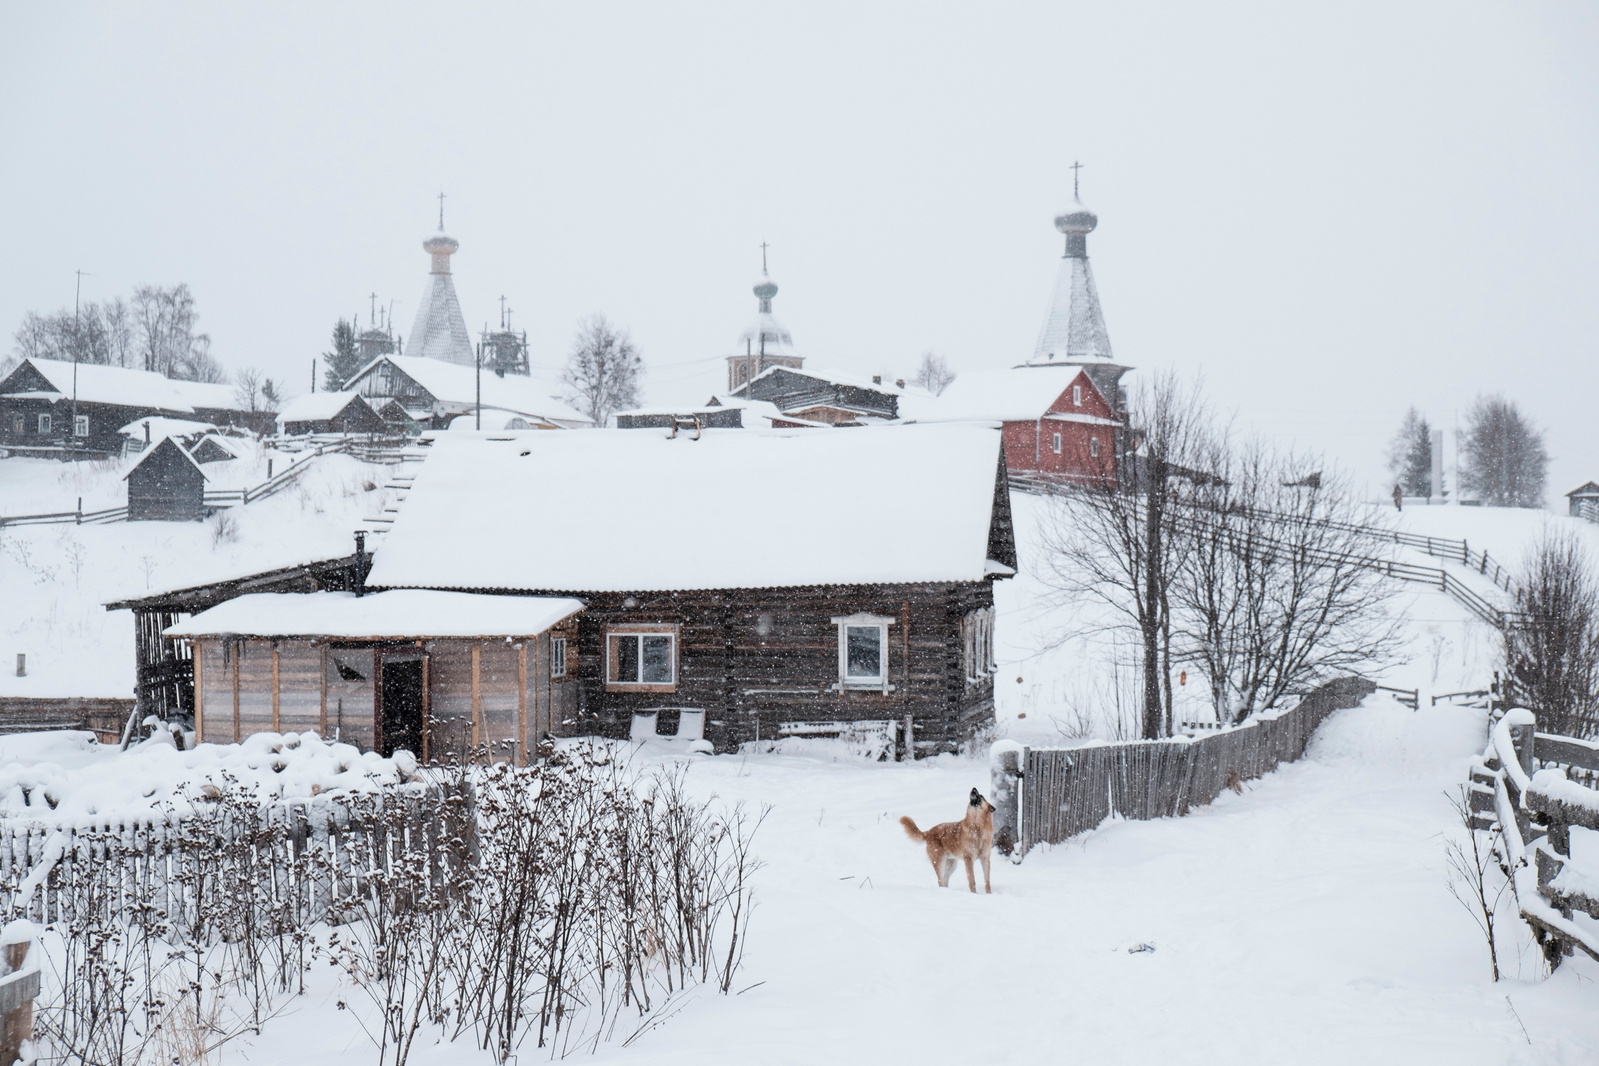 Nenoksa Village, Arkhangelsk Region for Zapovednik